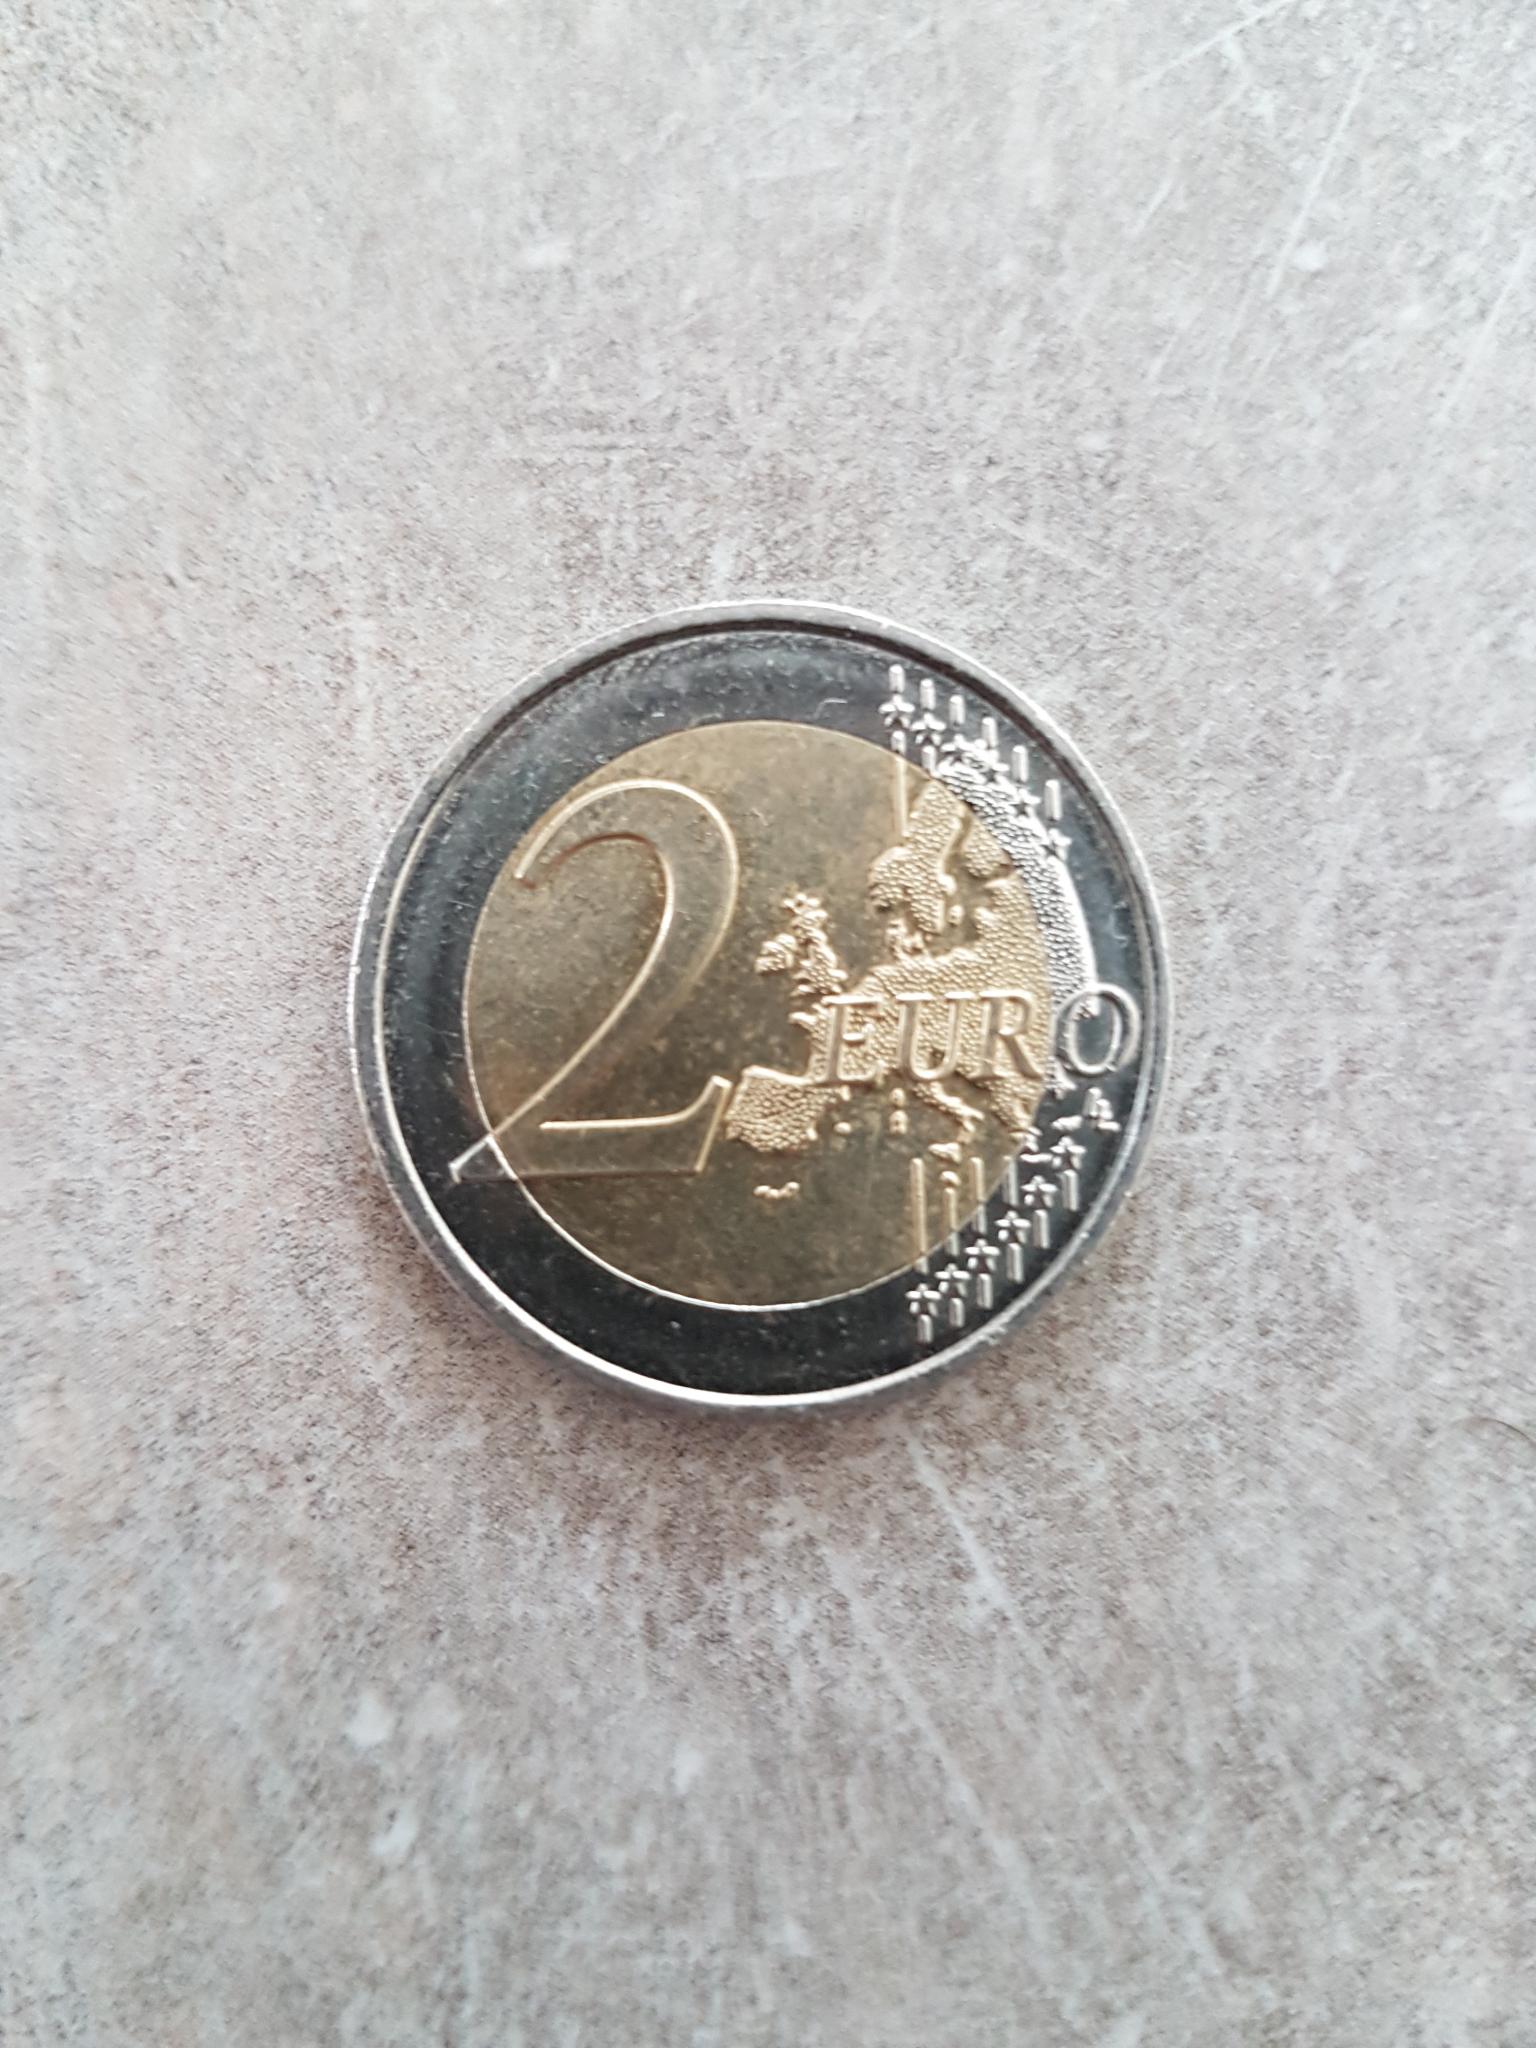 Combien Vaut Cette Pièce De 2€ Les Euros Monnaies Et Billets